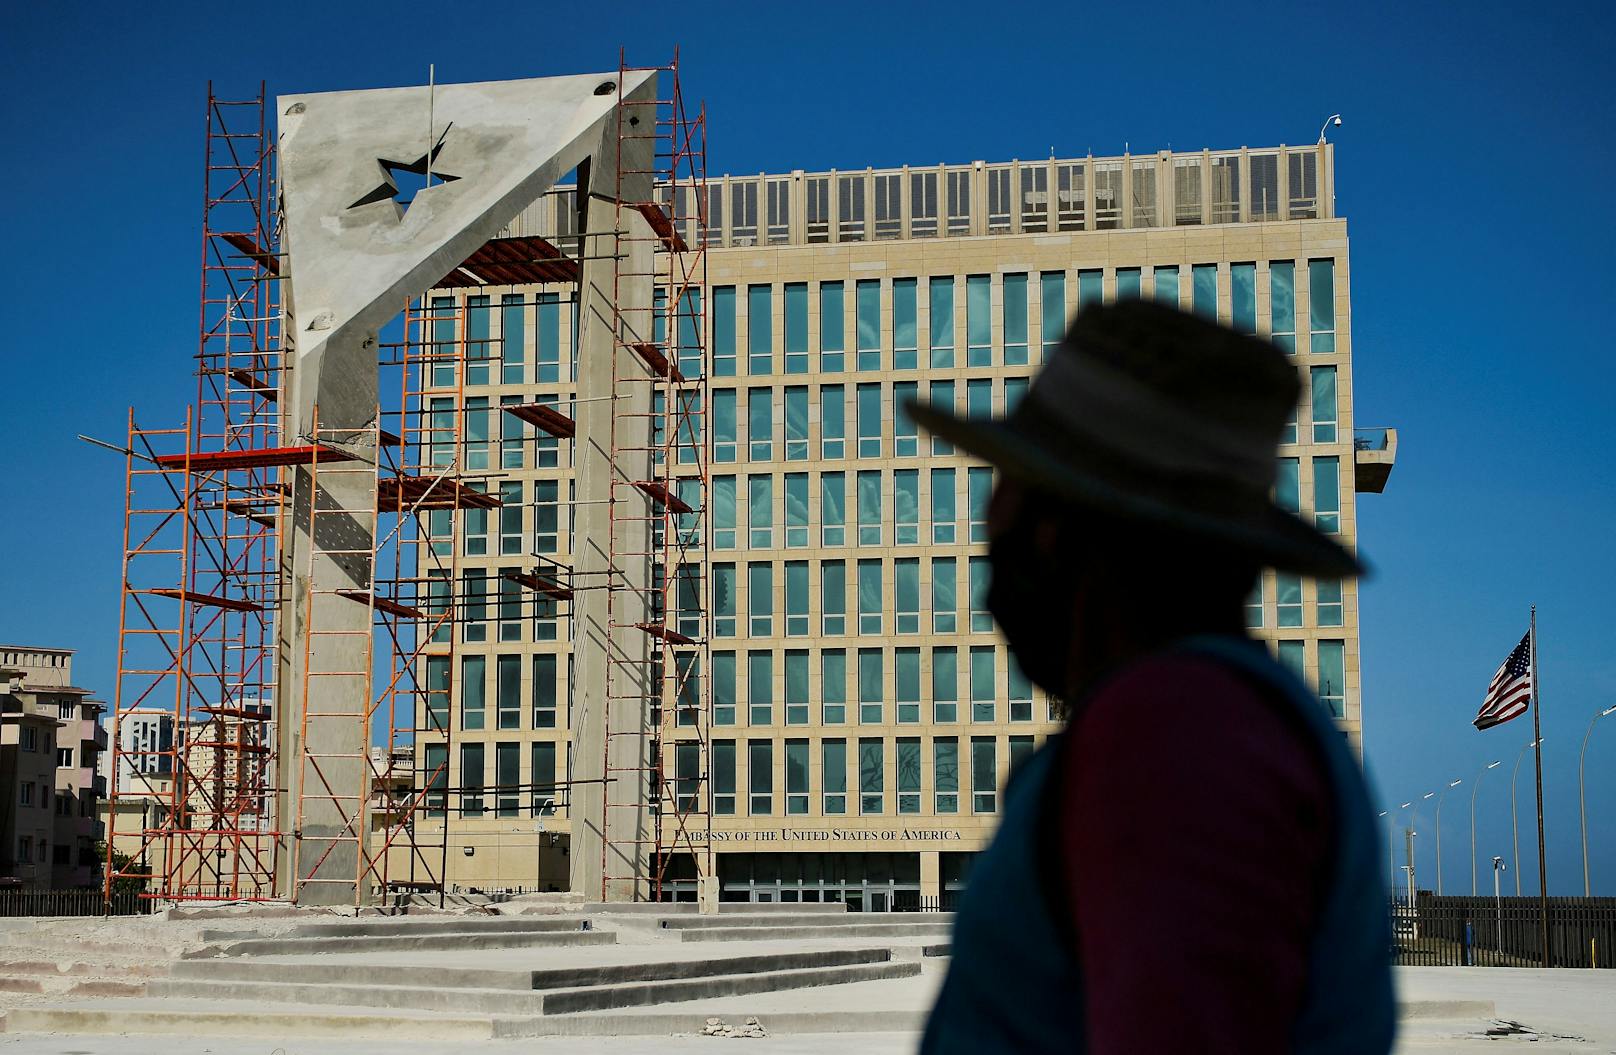 Das Havanna-Virus tauchte das erste Mal in der US-Botschaft auf Kuba auf. 